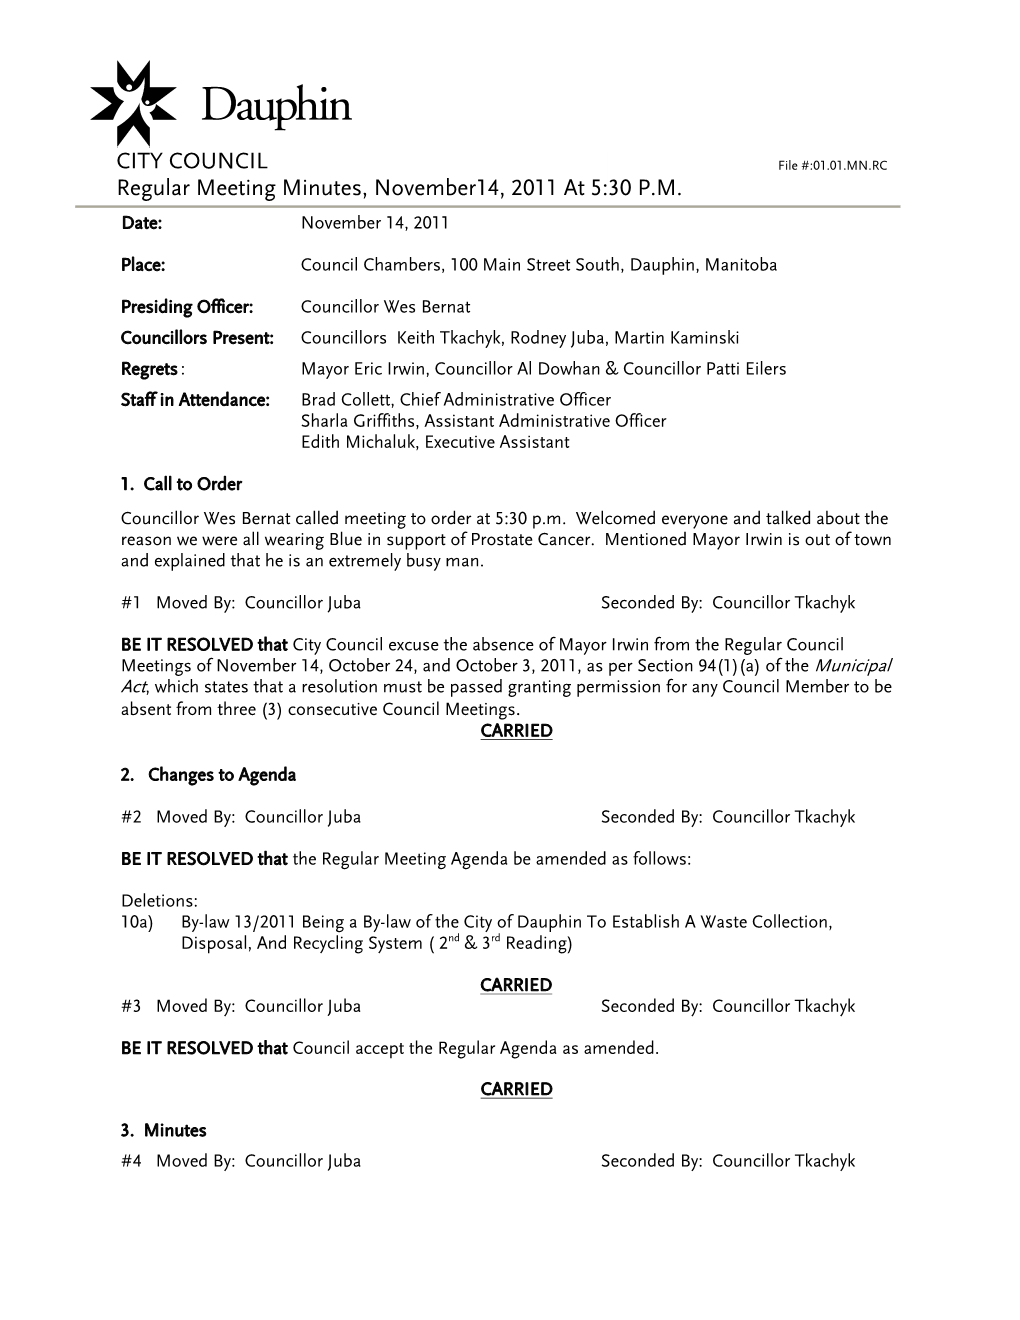 CITY COUNCIL Regular Meeting Minutes, November14, 2011 at 5:30